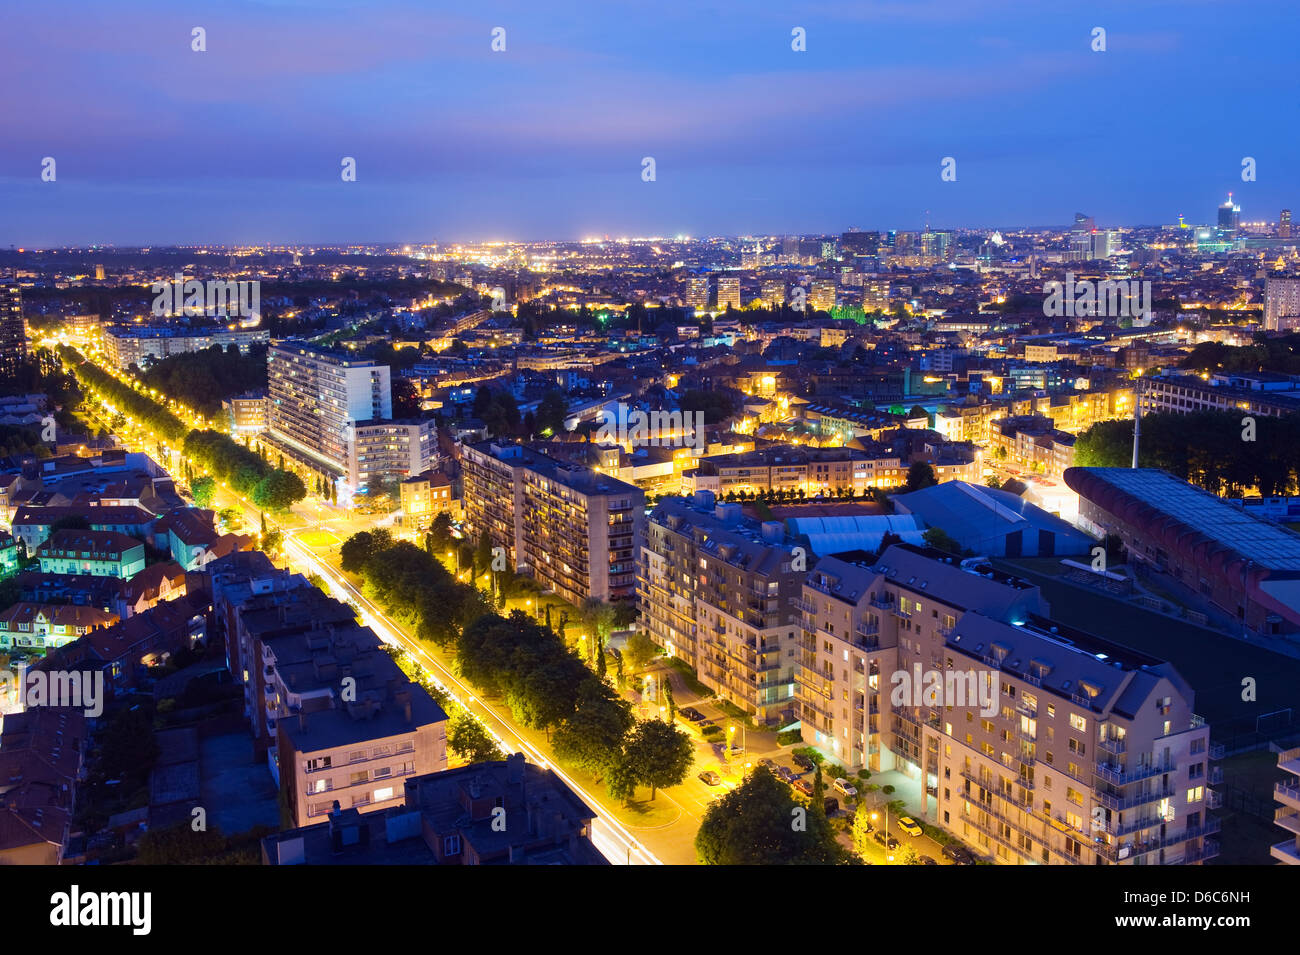 panoramic view of the city illuminated at night, Brussels, Belgium, Europe Stock Photo